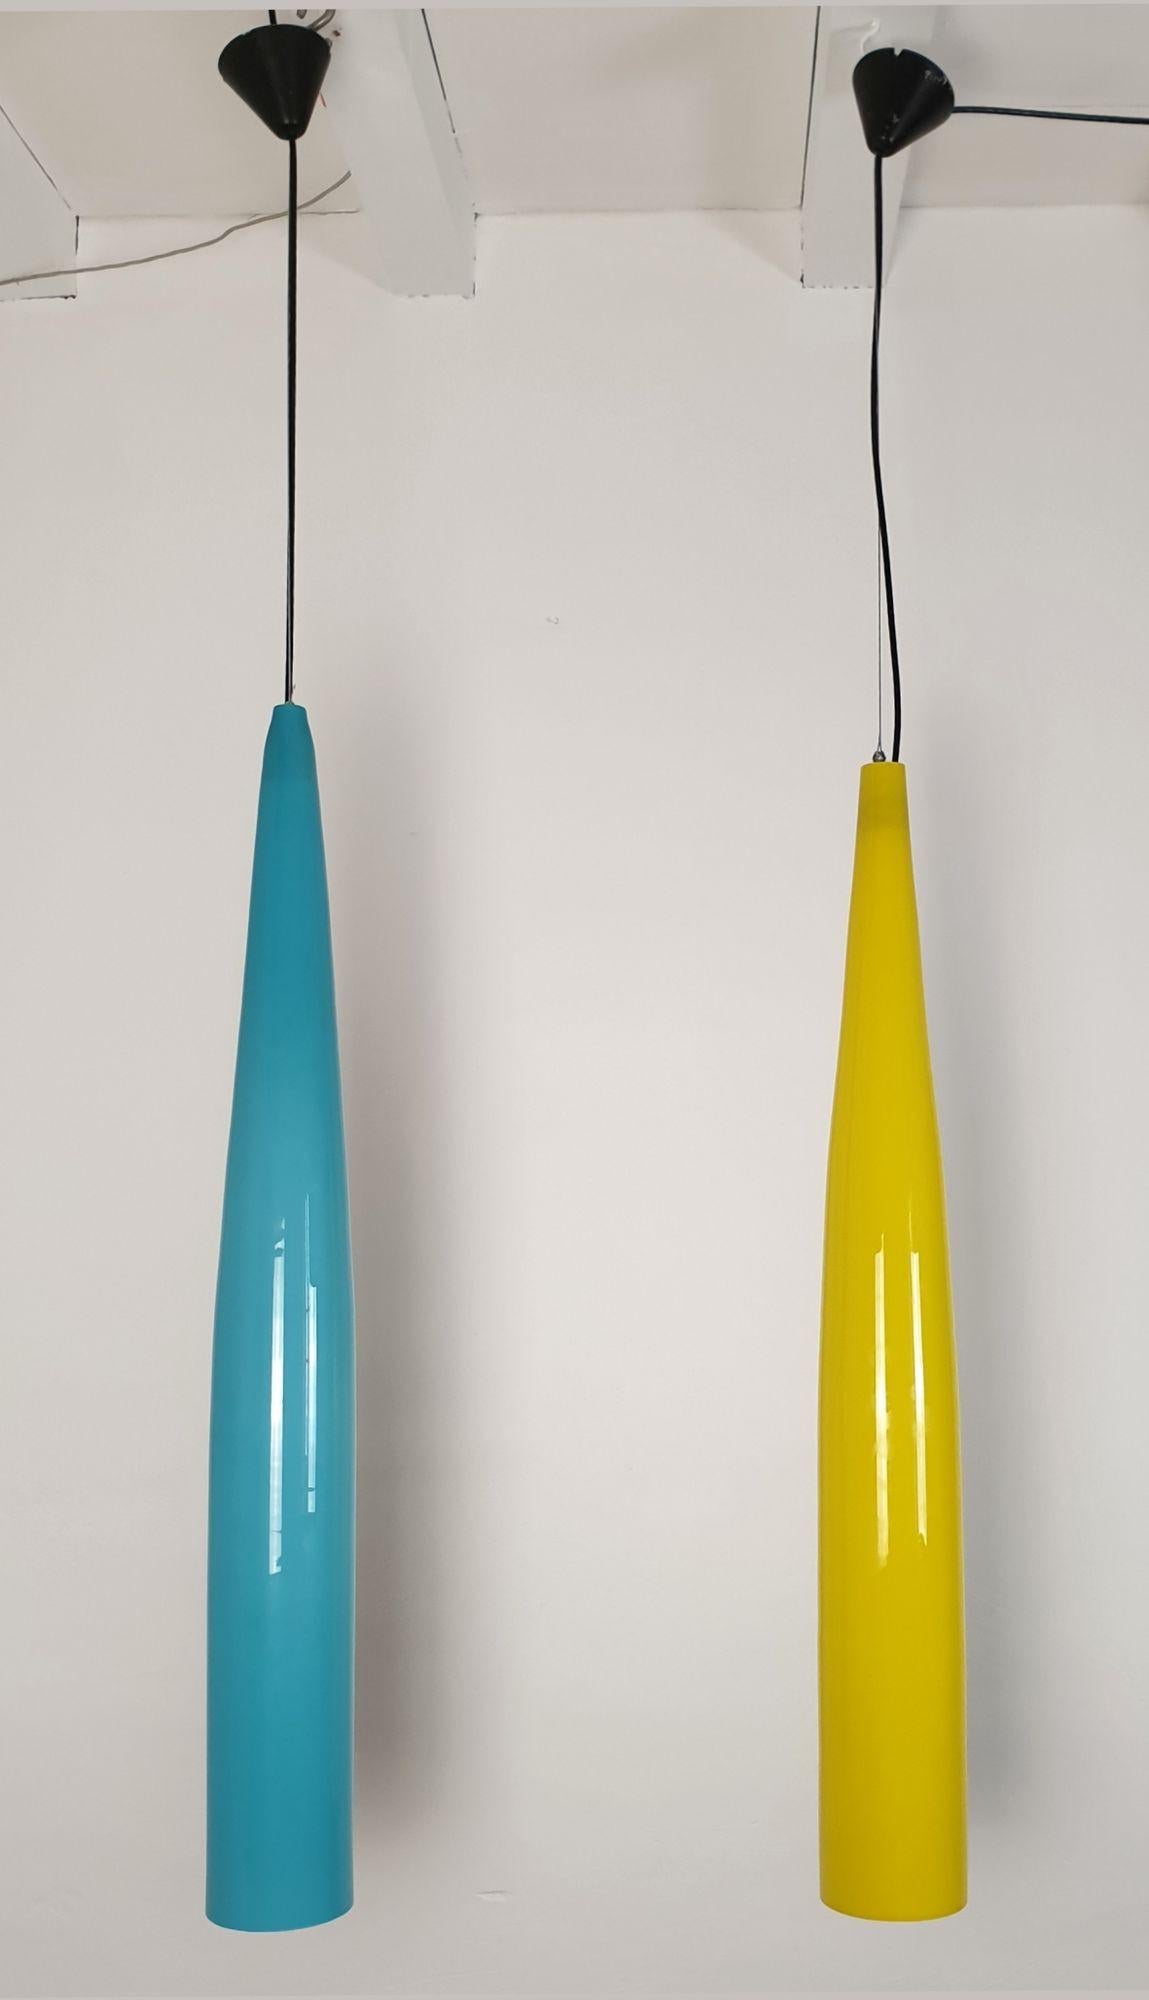 Très longues lampes suspendues en verre de Murano modernes du milieu du siècle, par Alessandro Pianon pour Vistosi, Italie, années 1960.
La paire est composée d'un pendentif bleu ciel et d'un pendentif jaune en verre de Murano.
Le verre à double